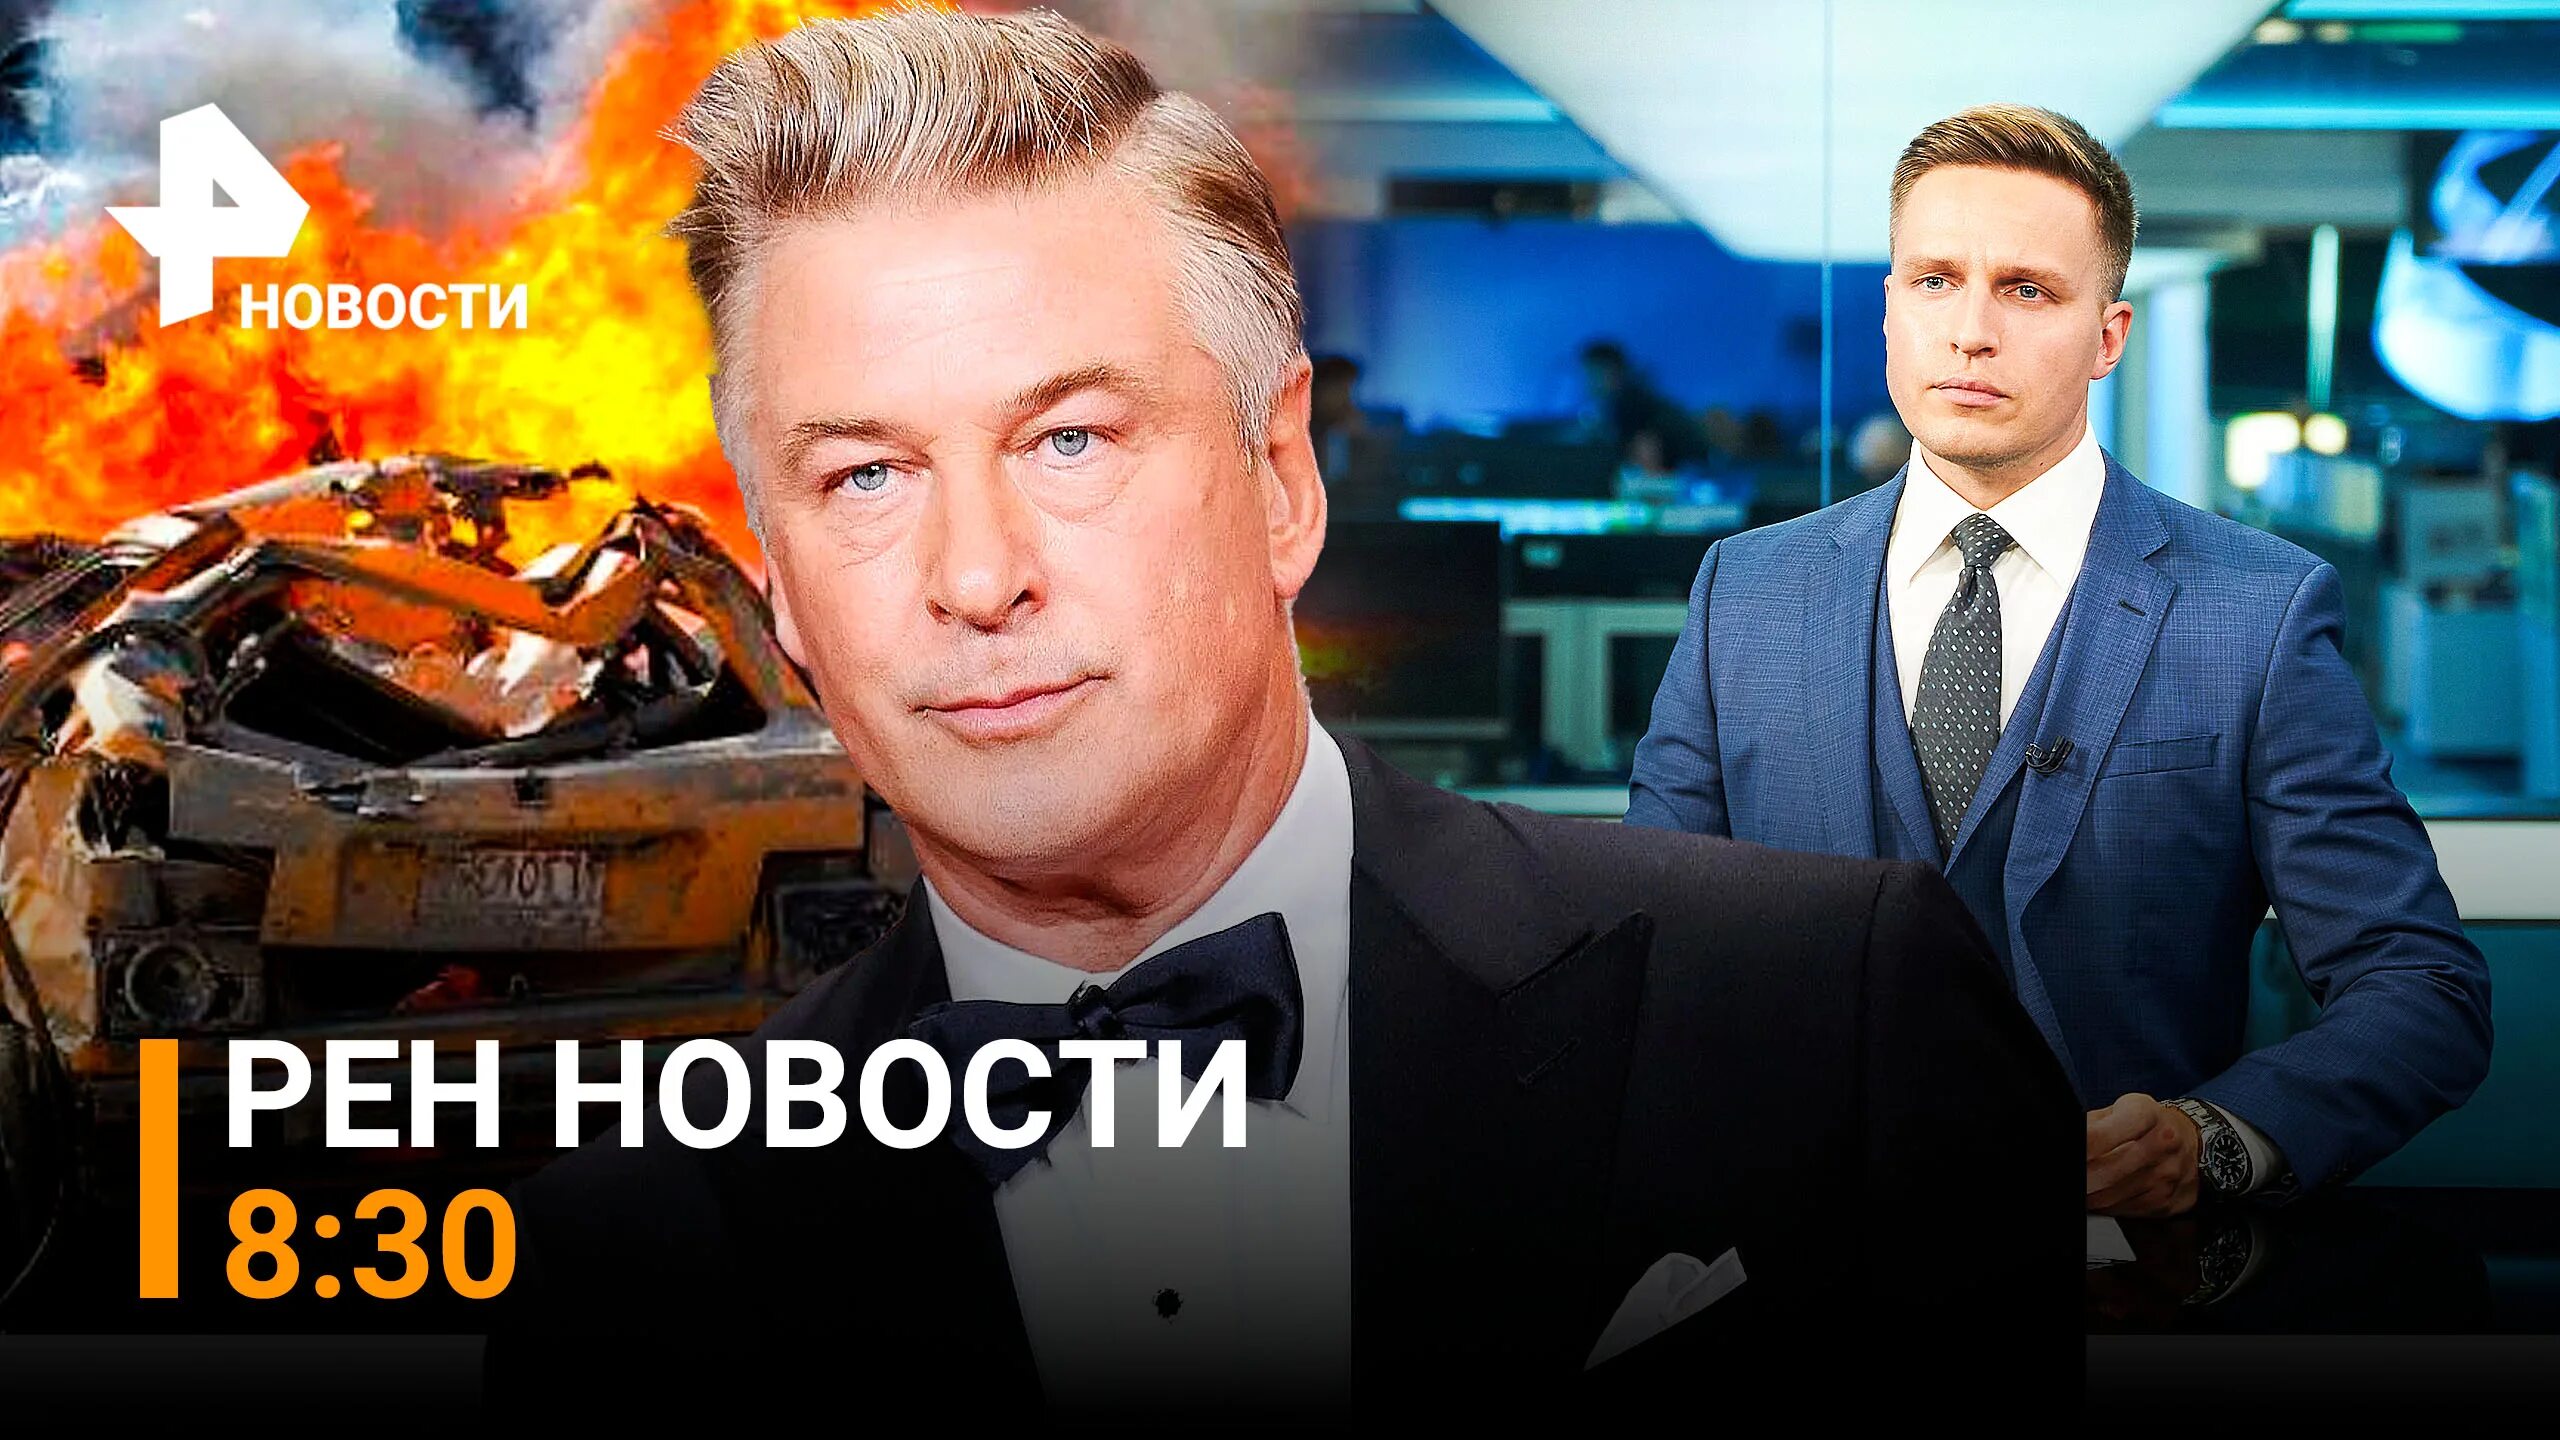 Новости РЕН ТВ. РЕН ТВ HD. +Ведущий новостей на РЕН ТВ ставки на спорт.